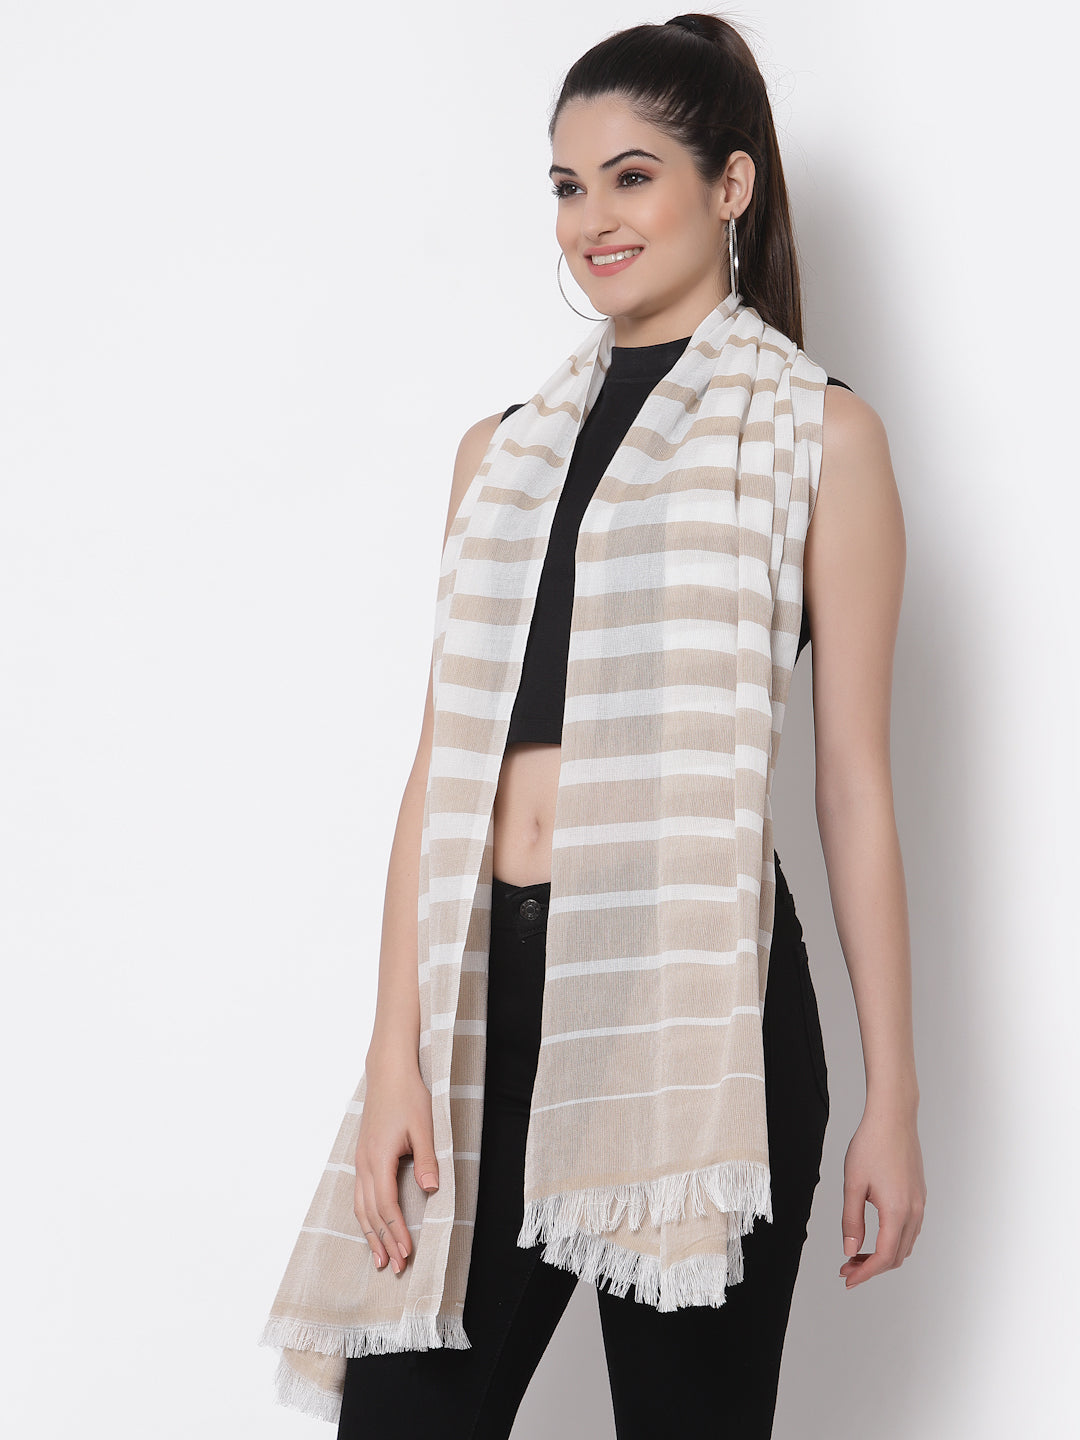 Arrabi Beige Stripes Handwoven Cotton Full Size Stole (185 x 85 cm)